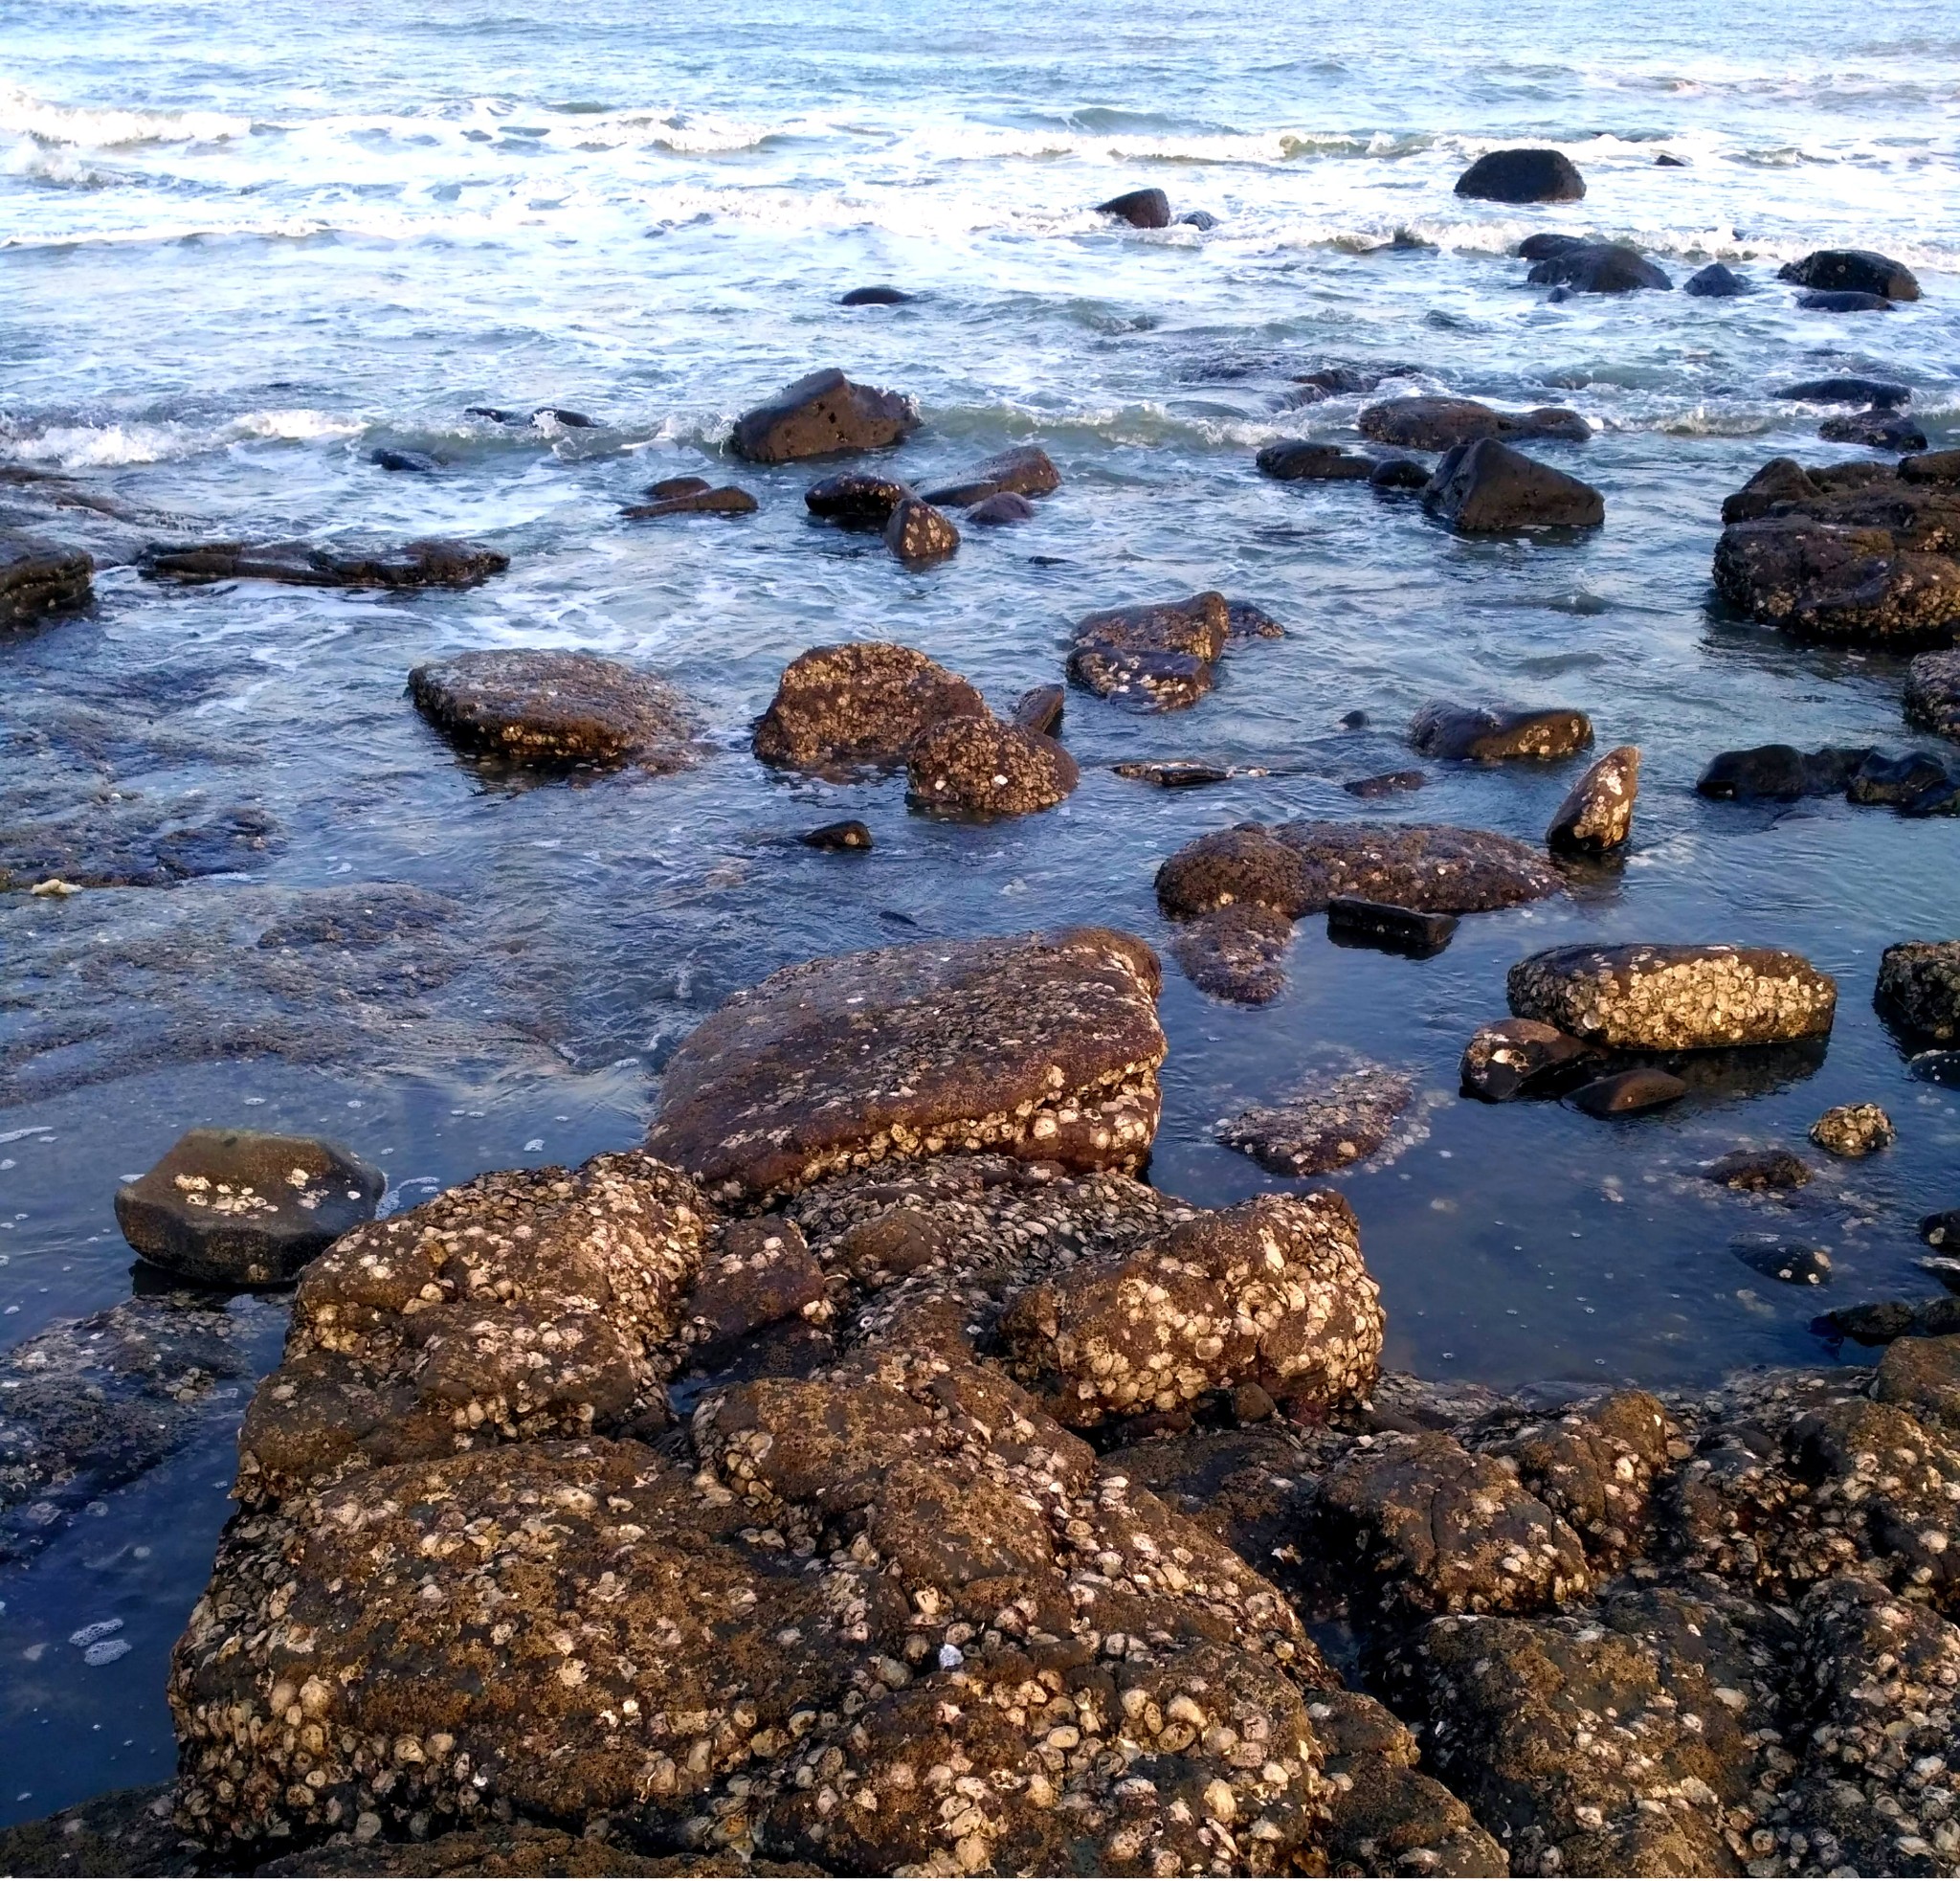 踏着形状不一的黑石头行走在海岸边.